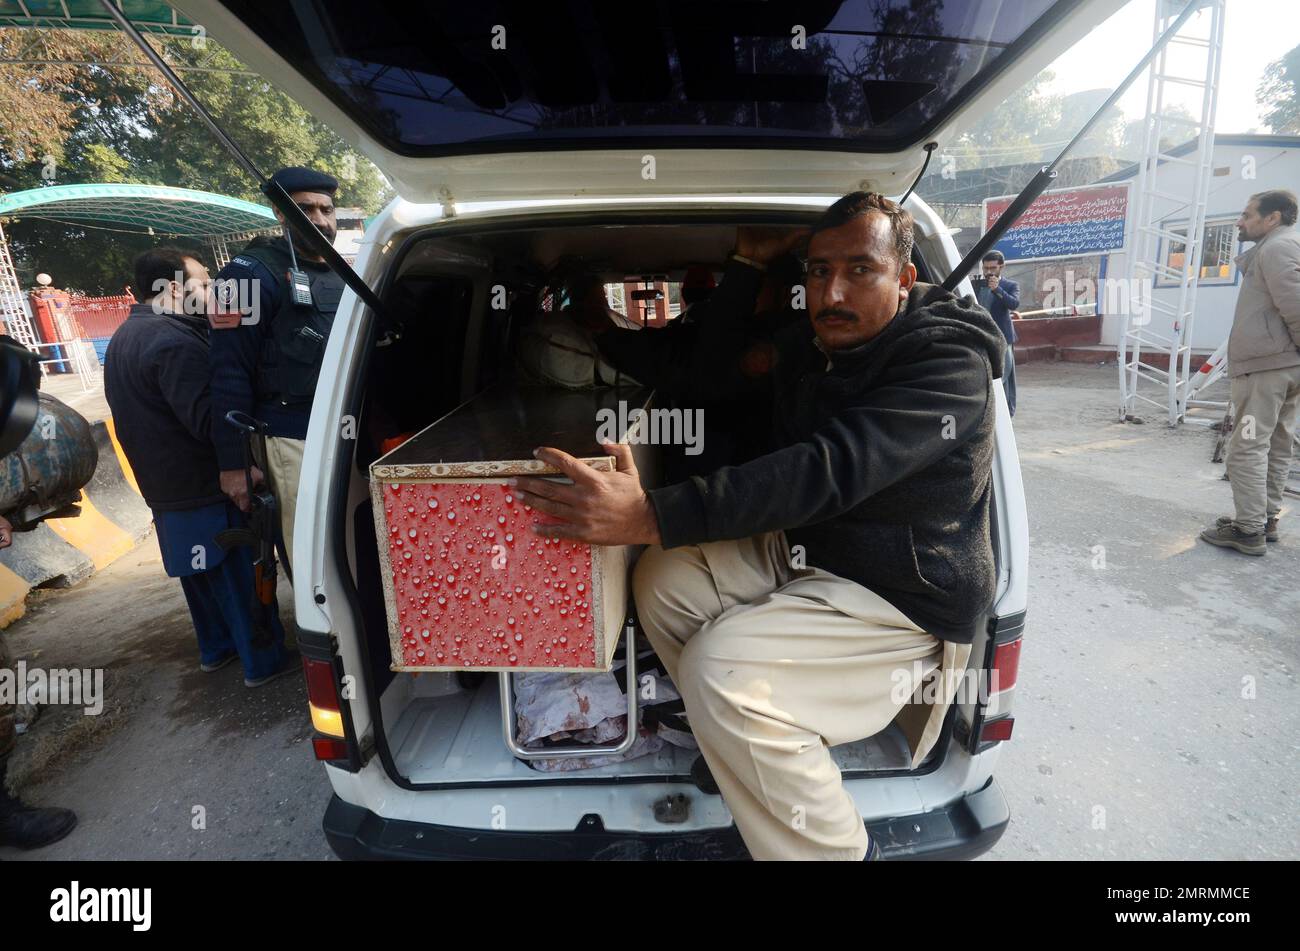 Peshawar, Khyber Pakhtunkhwa, Pakistan. 31. Januar 2023. Pakistanische Sicherheitsbeamte inspizieren den Tatort einen Tag nach einem Selbstmordattentat auf eine Moschee in Polizeilinien in Peshawar, Provinz KPK. Die Zahl der Todesopfer durch die Selbstmordattentate hat 92 erreicht, sagte die Polizei am 31. Januar. Die meisten Opfer des Angriffs, eines der tödlichsten Opfer, die jemals bei den Strafverfolgungsbehörden in der Geschichte Pakistans inszeniert wurden, sind Polizisten und andere Mitglieder der Sicherheitskräfte. (Kreditbild: © Hussain Ali/Pacific Press via ZUMA Press Wire) NUR REDAKTIONELLE VERWENDUNG! Nicht für den kommerziellen GEBRAUCH! Stockfoto